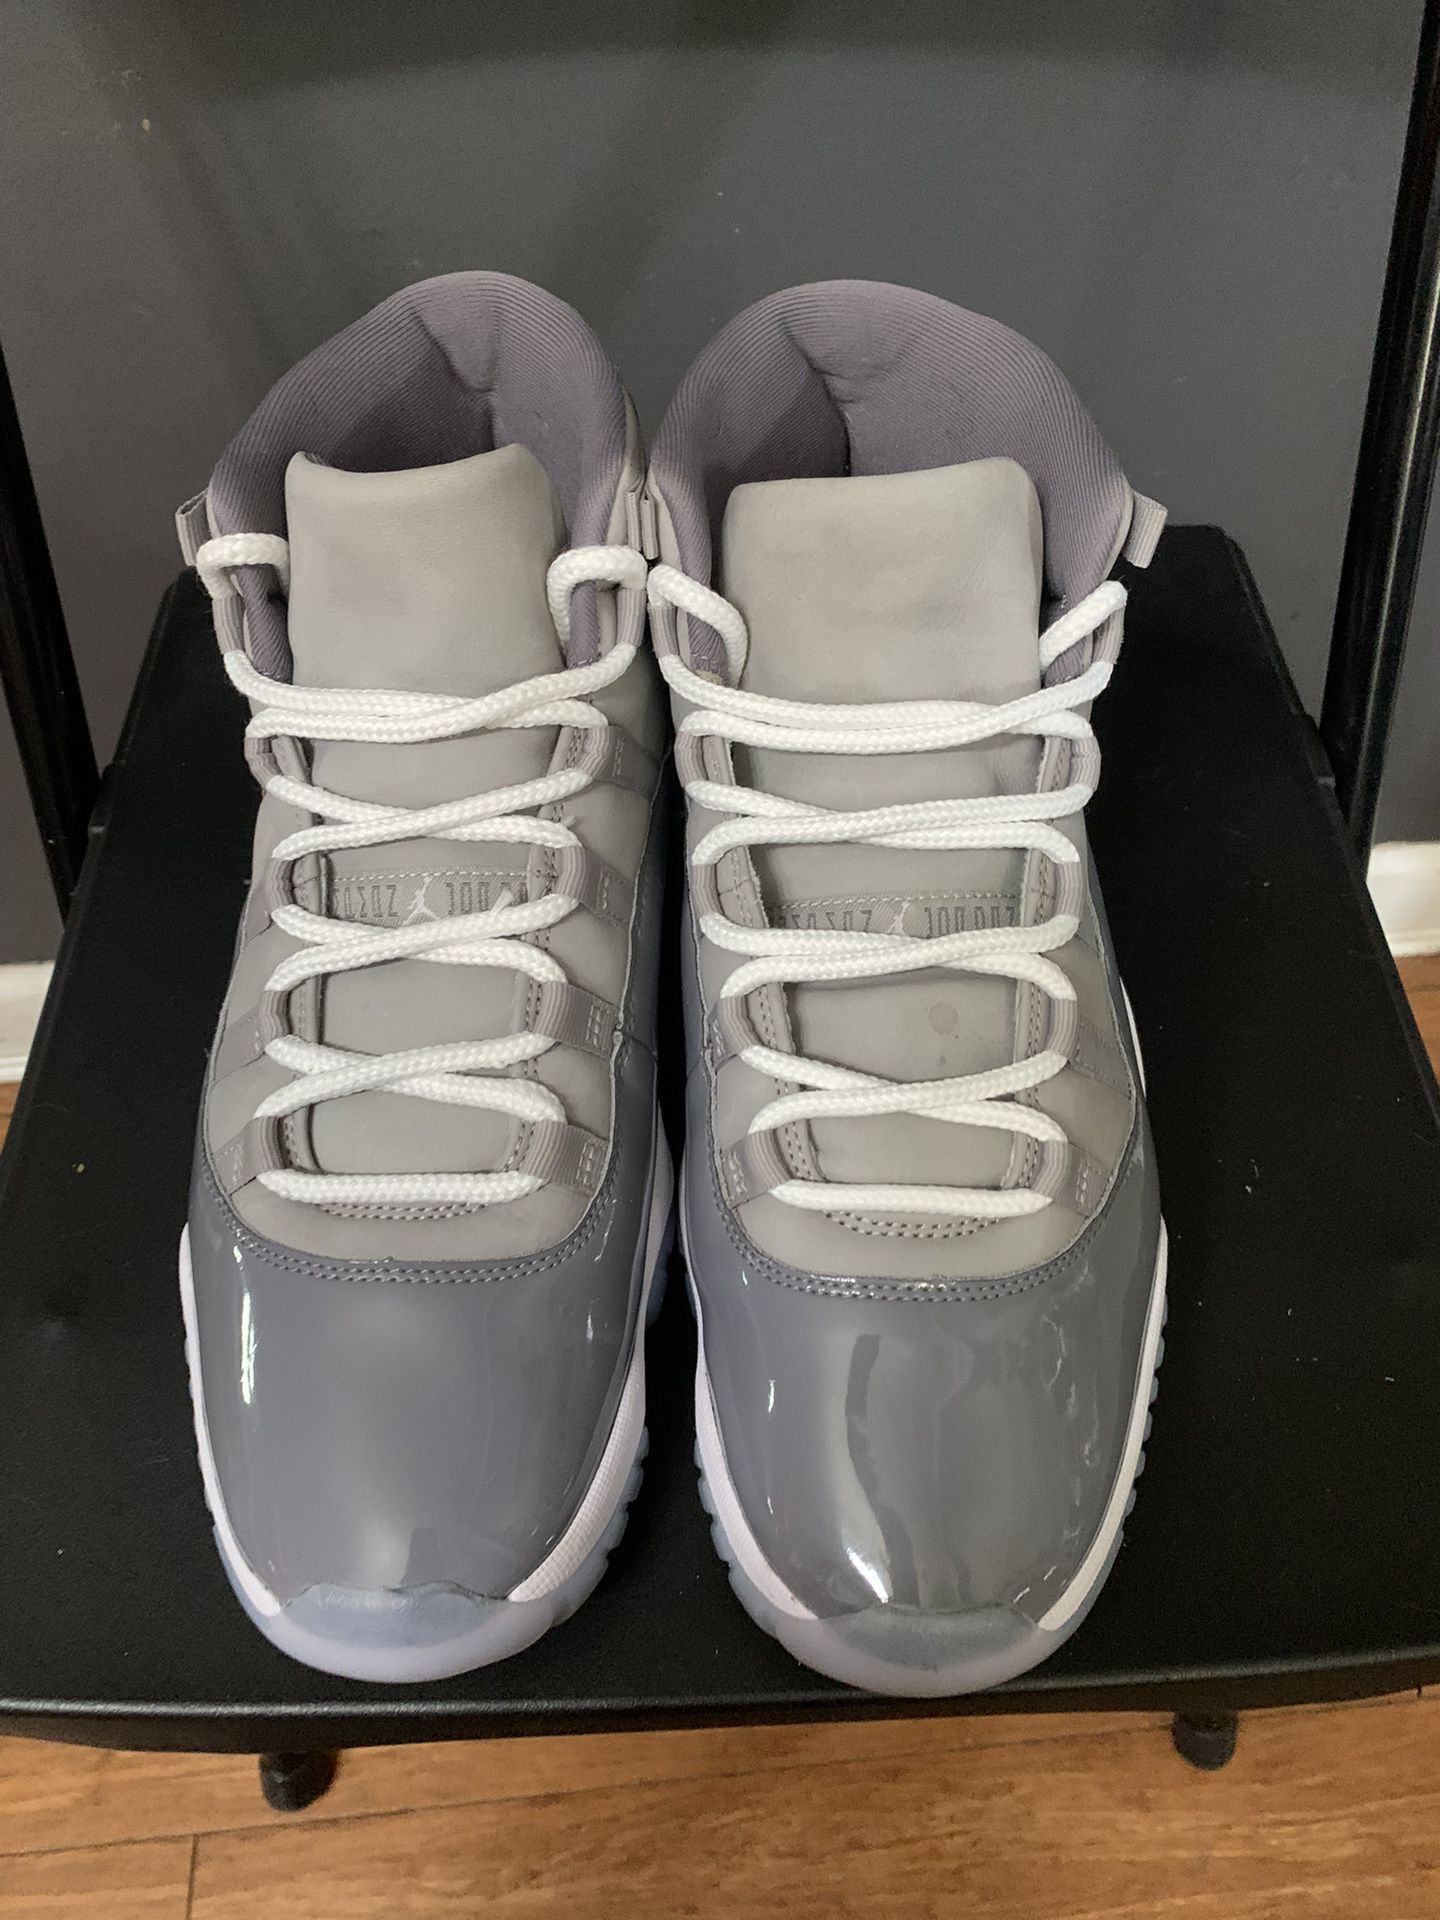 Jordan 11 Cool Grays //// Nike Dunks Barbershop 